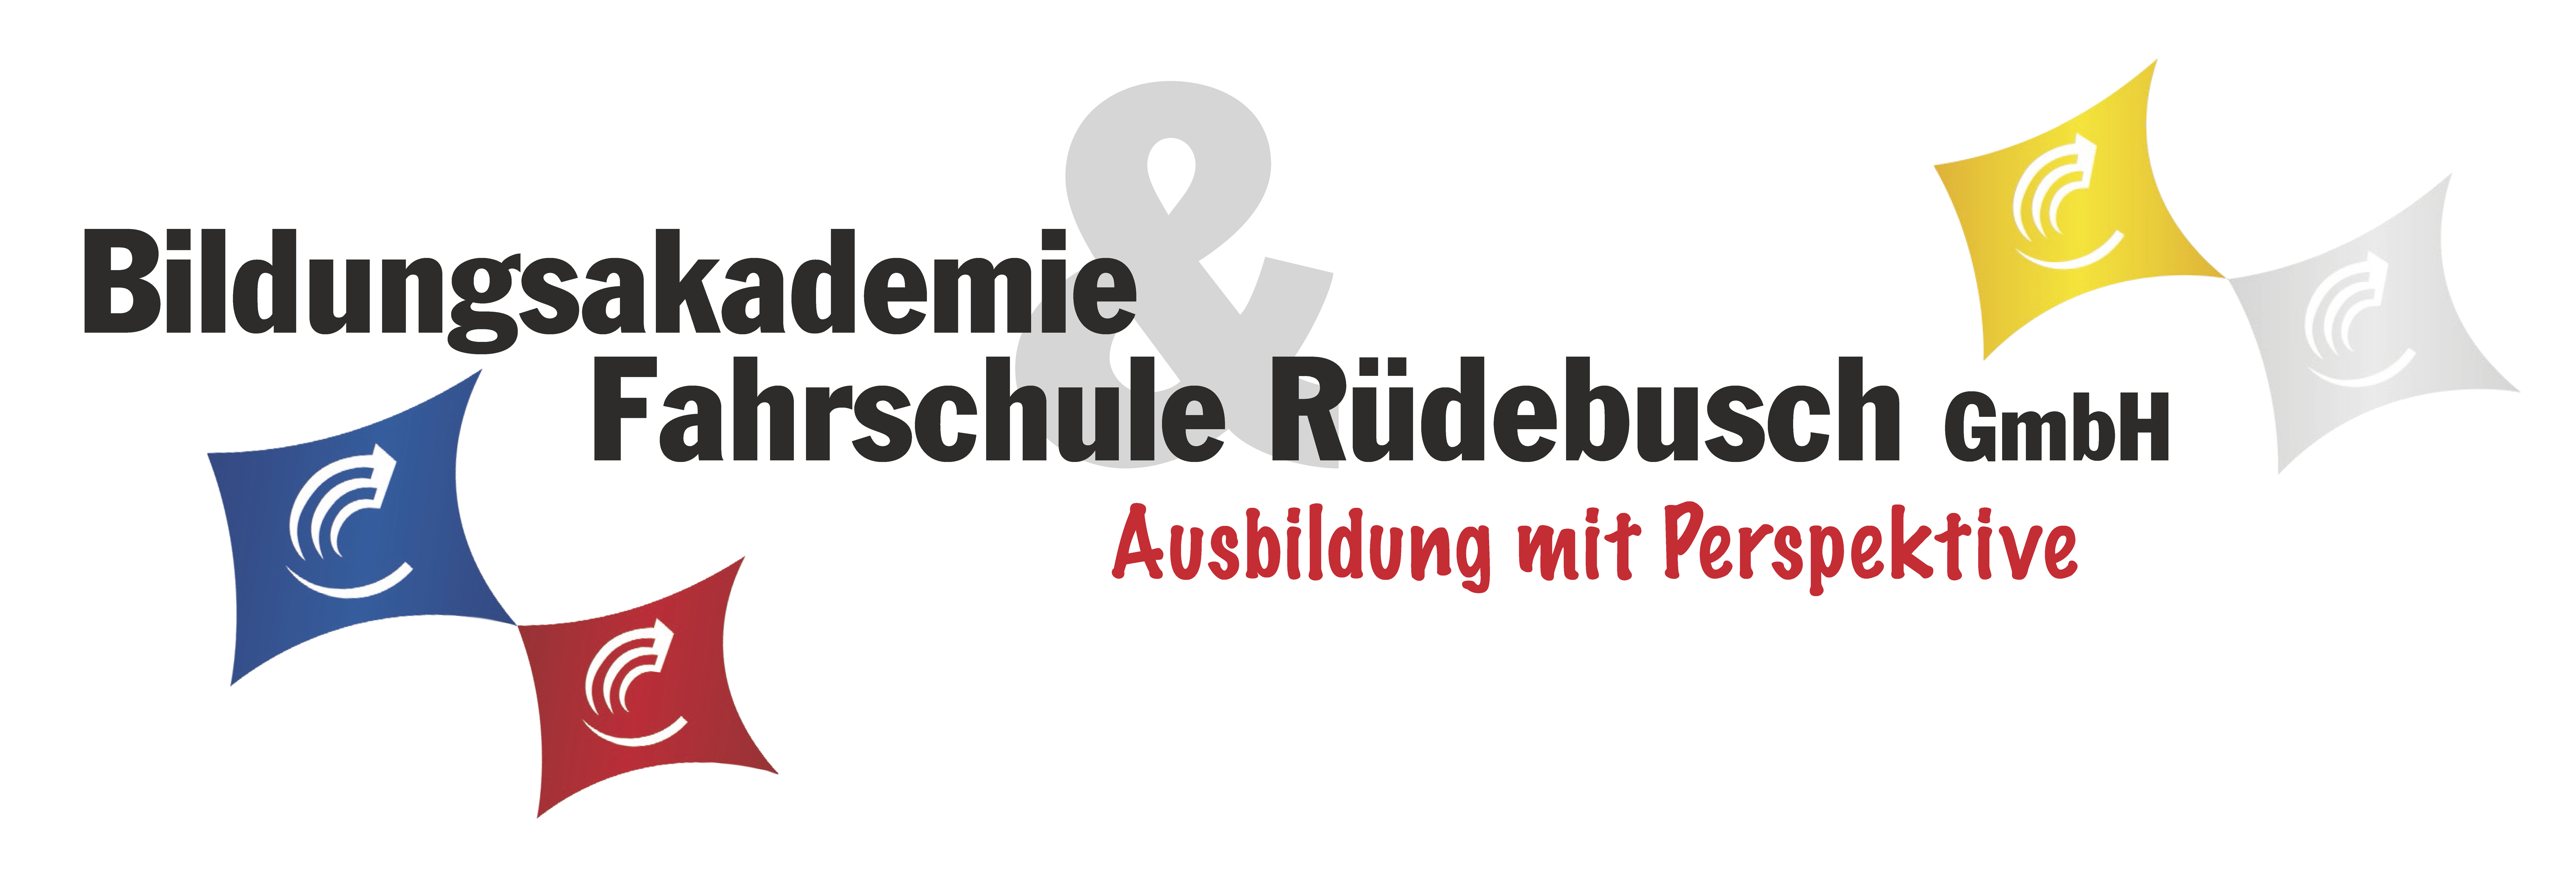 Bildungsakademie und Fahrschule Rüdebusch GmbH